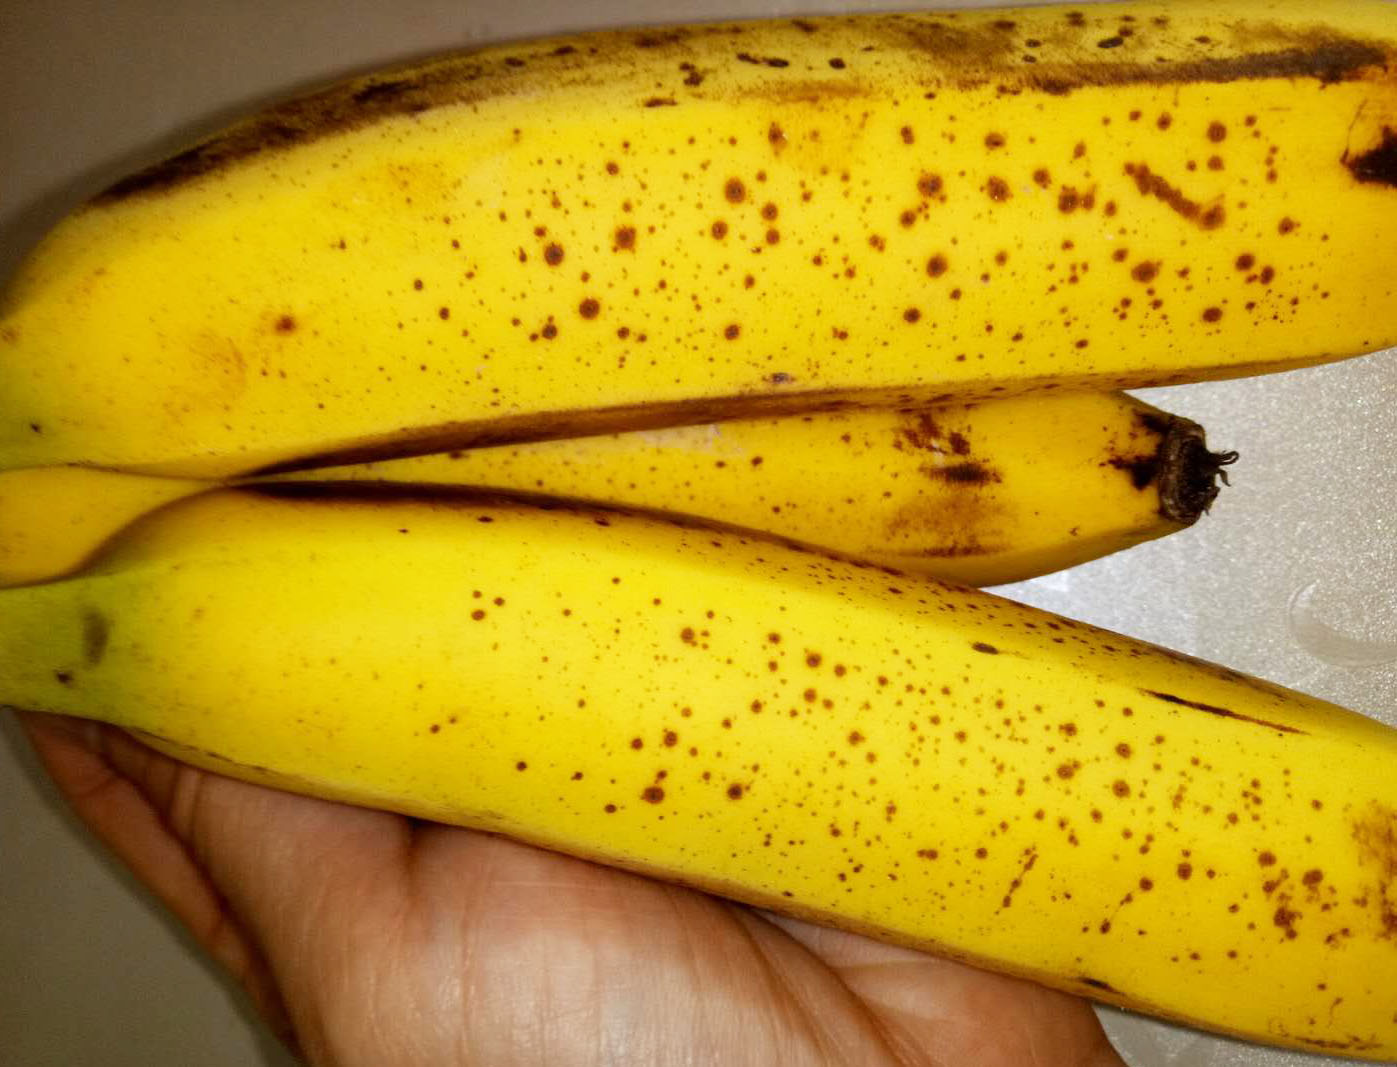 买香蕉,很多人嫌弃果皮有这种"黑斑",却不知道吃的是催熟香蕉!